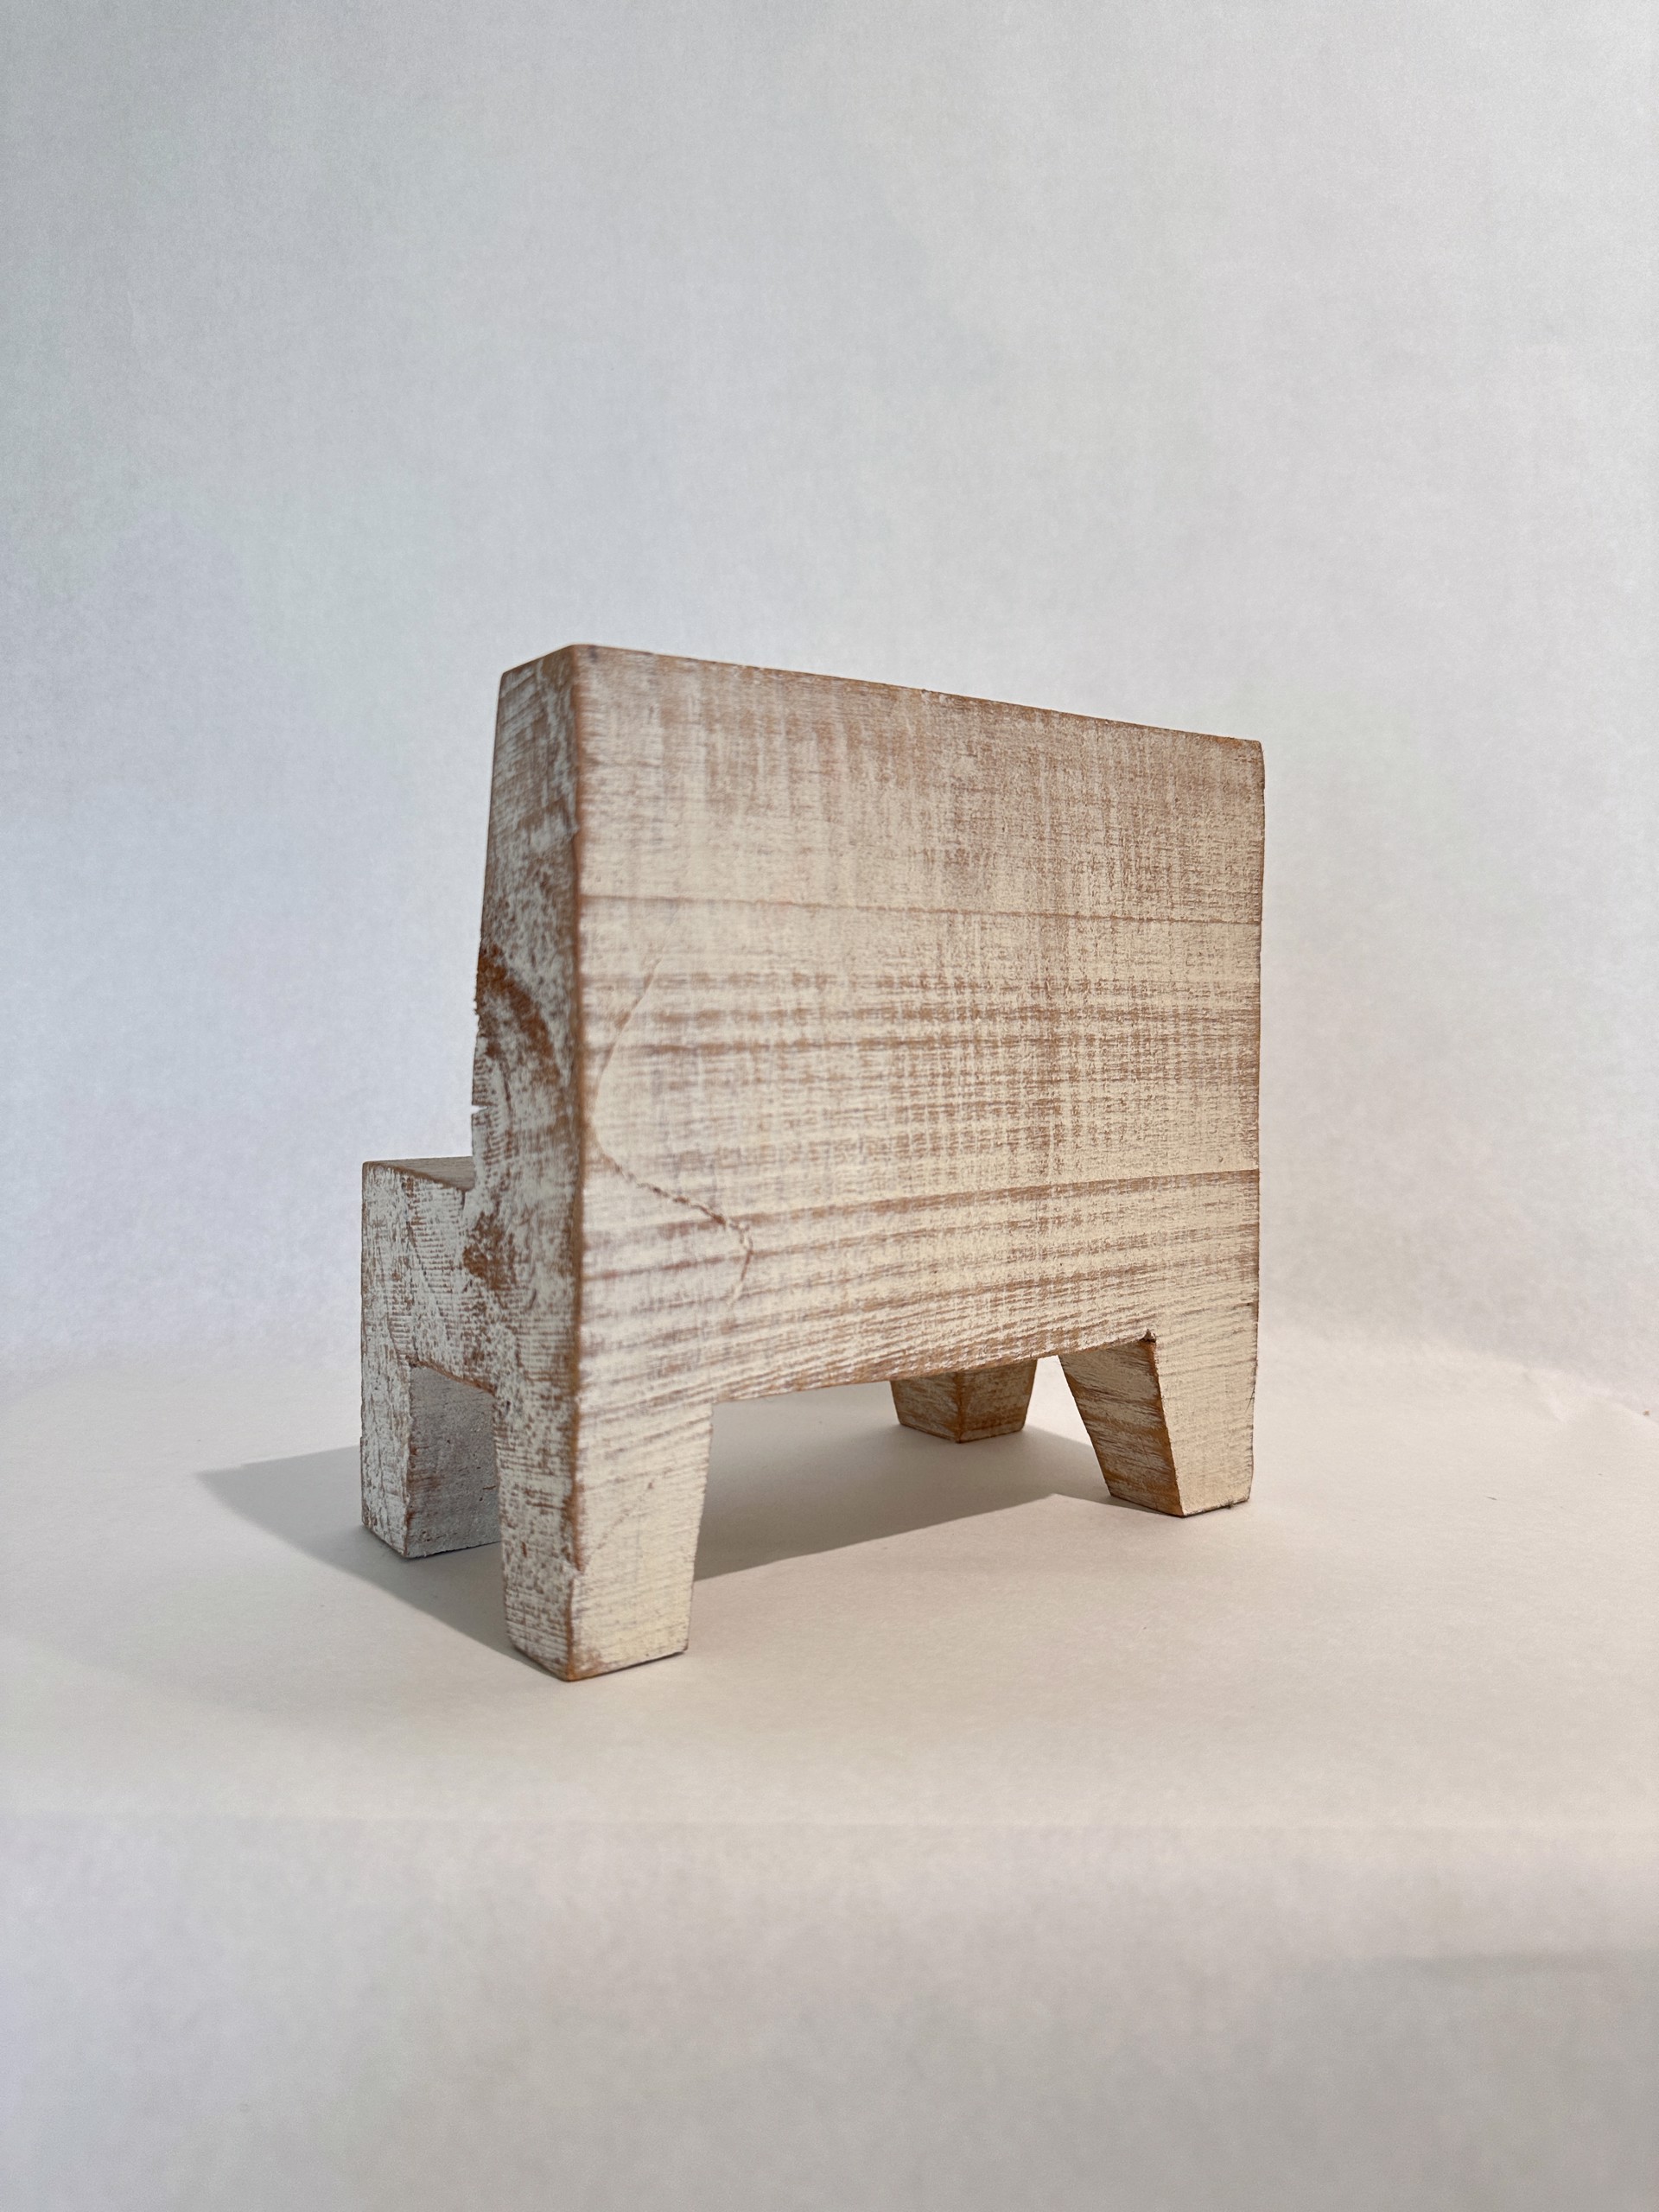 Medium Chair Sculpture by Ellie Richards